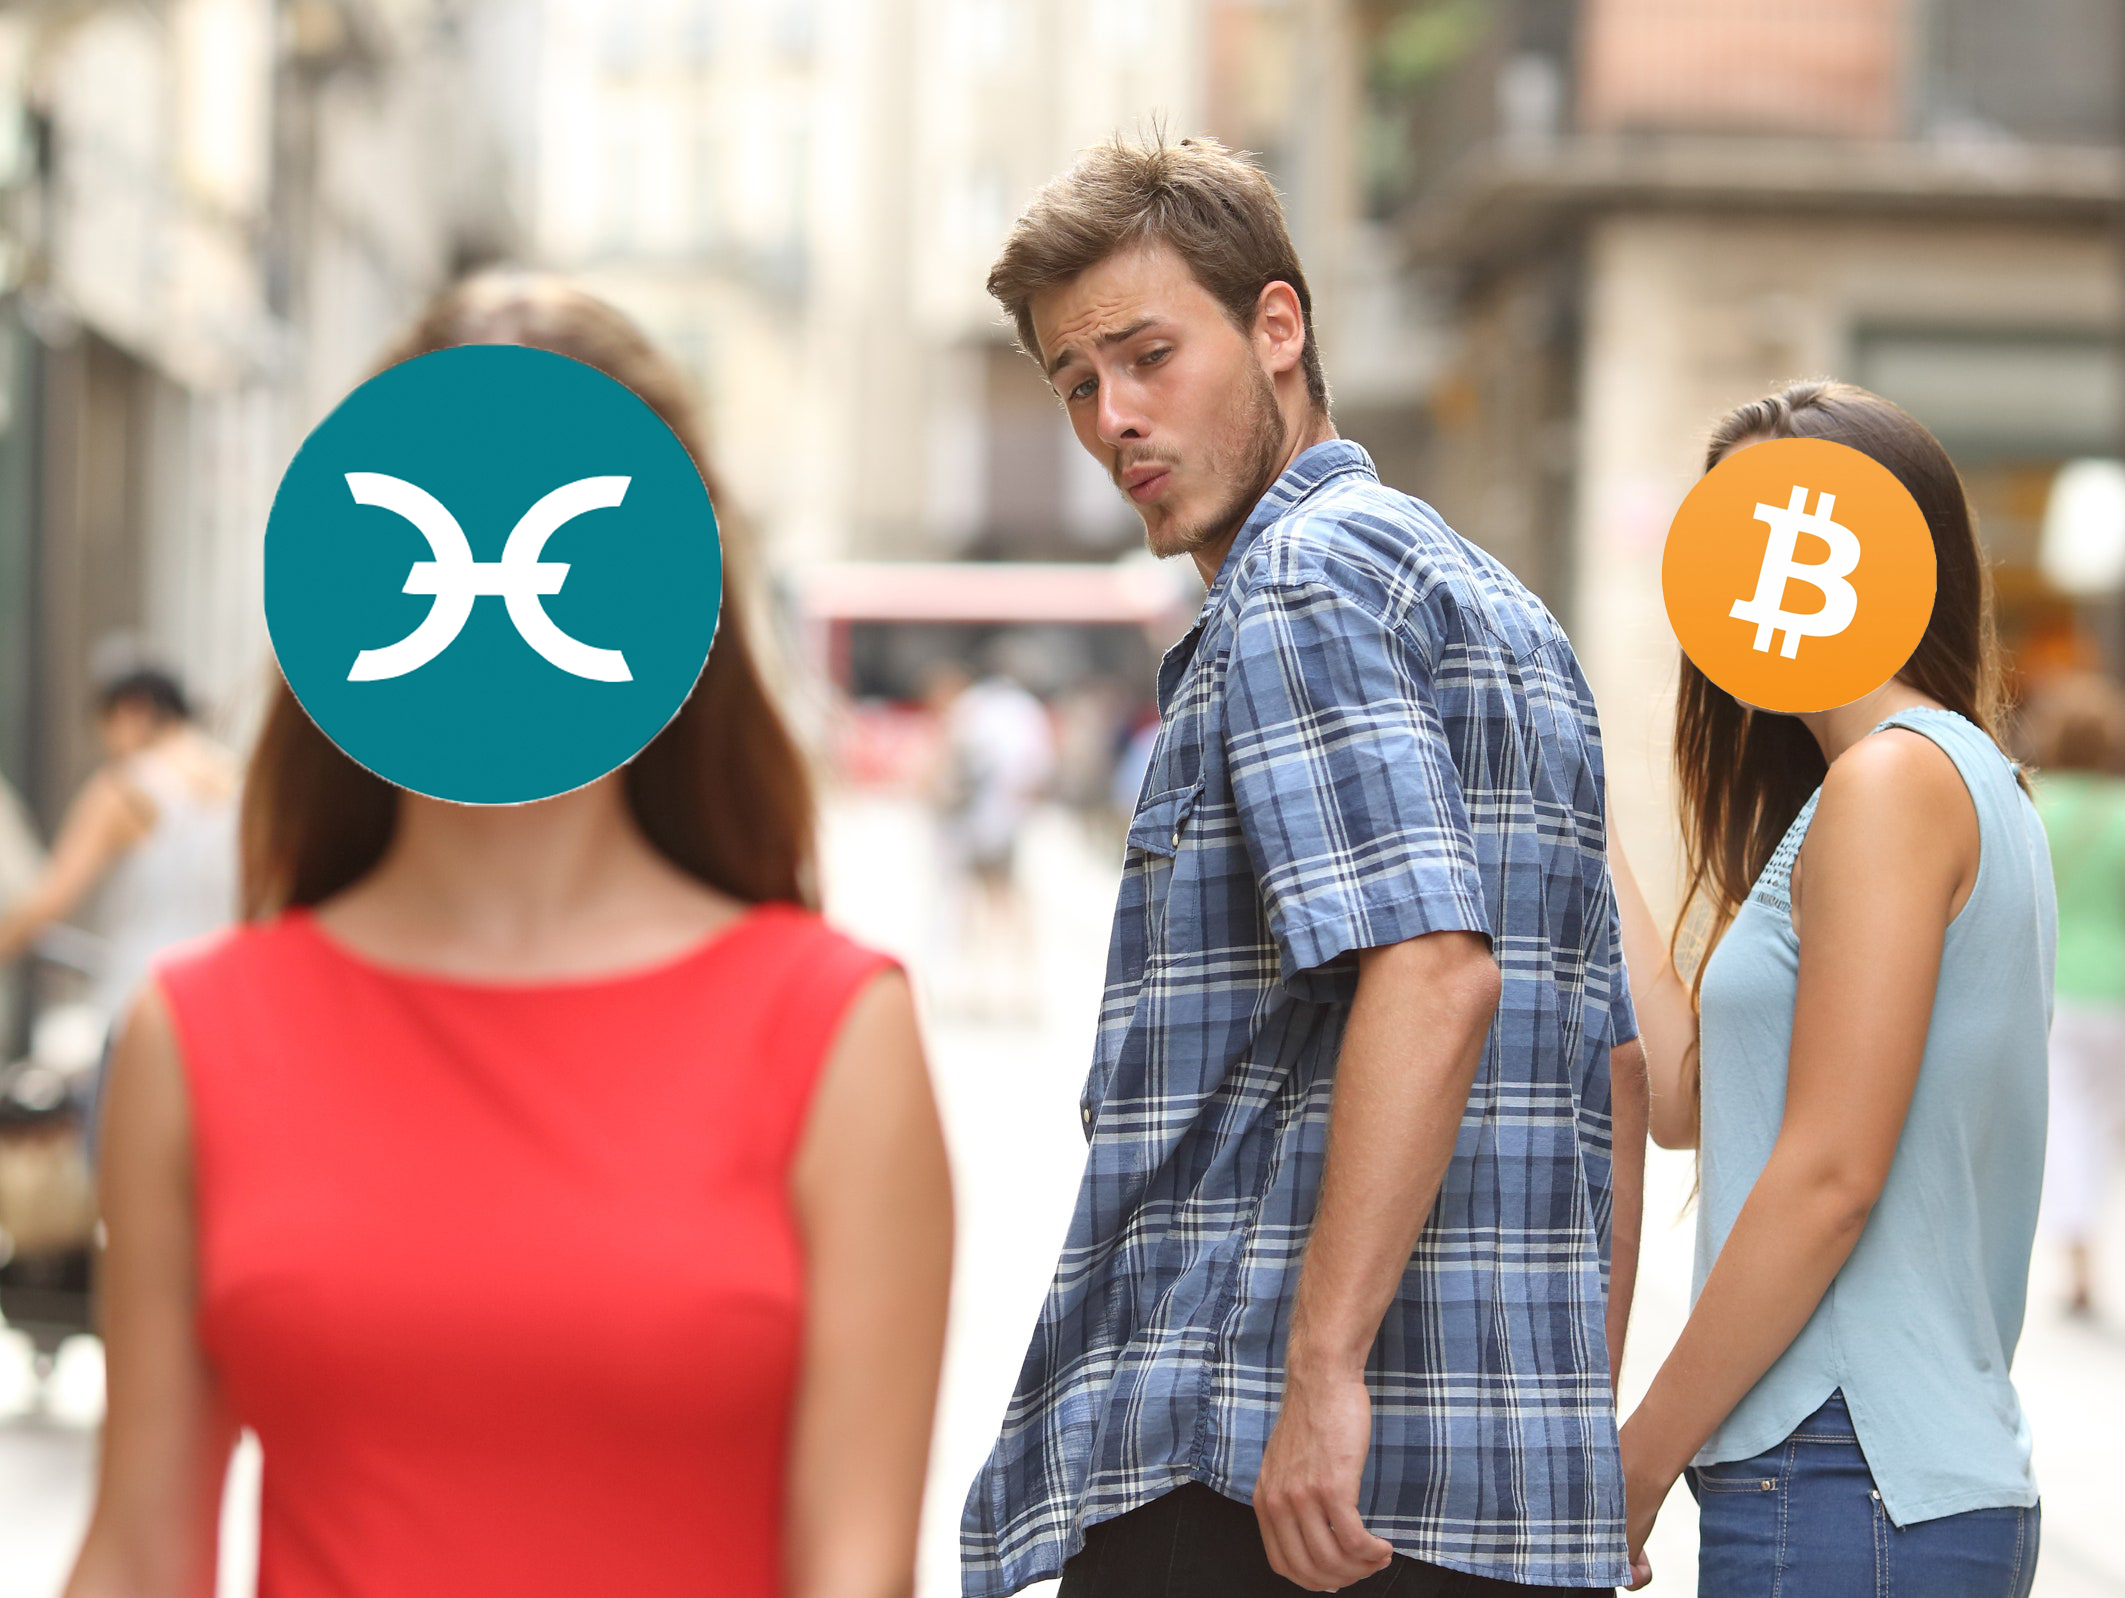 Holo vs Bitcoin meme